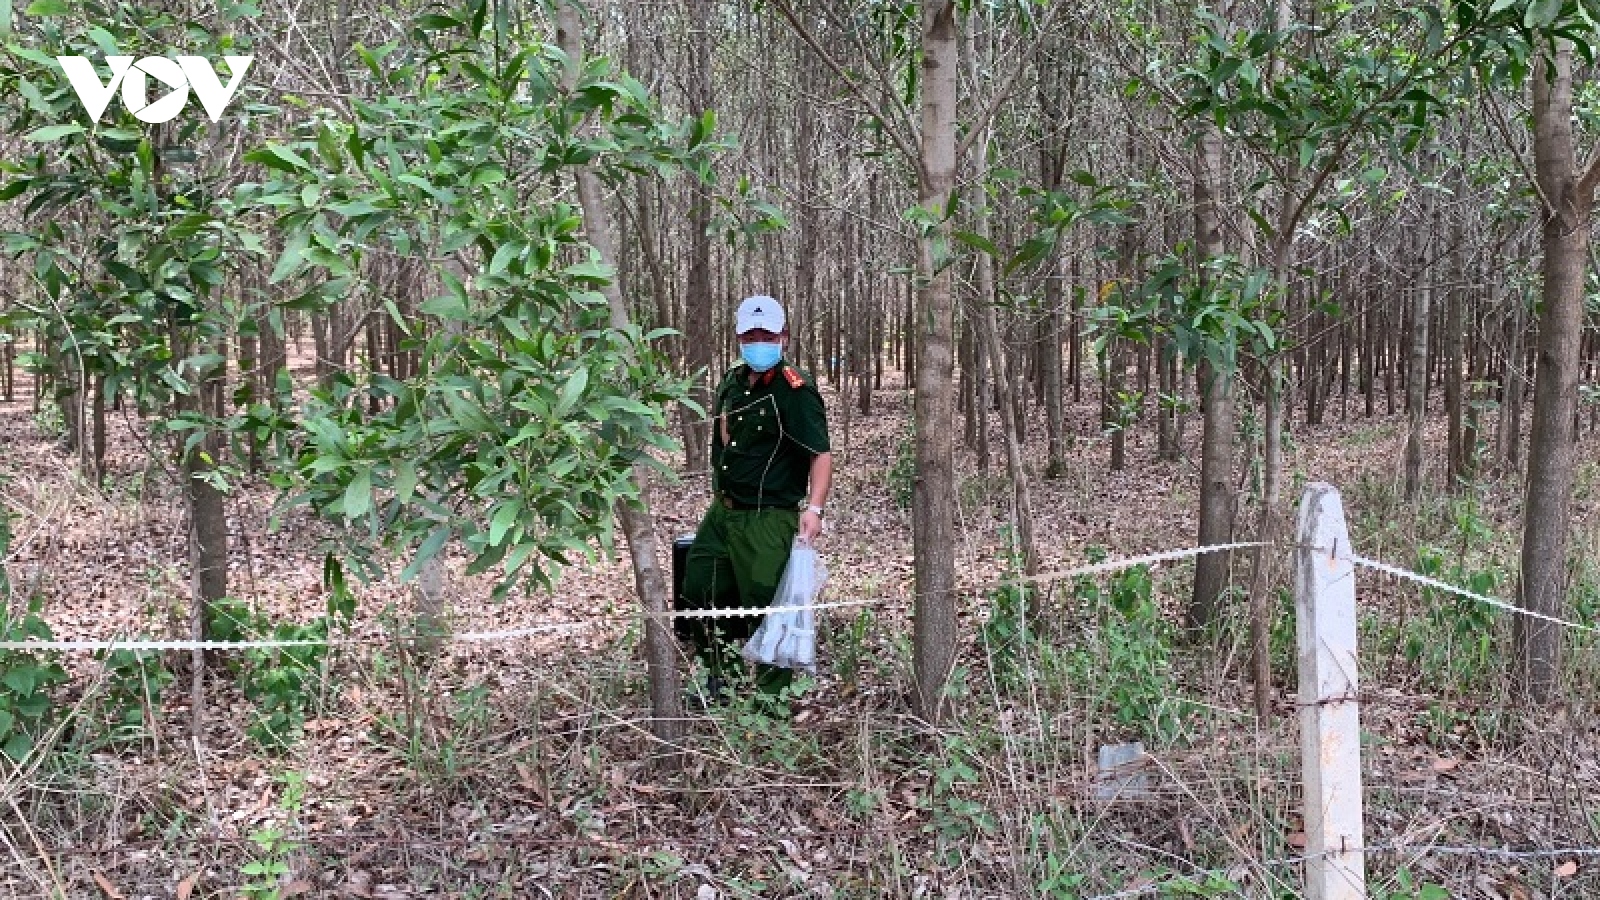 Phát hiện thi thể tại khu rừng tràm ở Bình Thuận